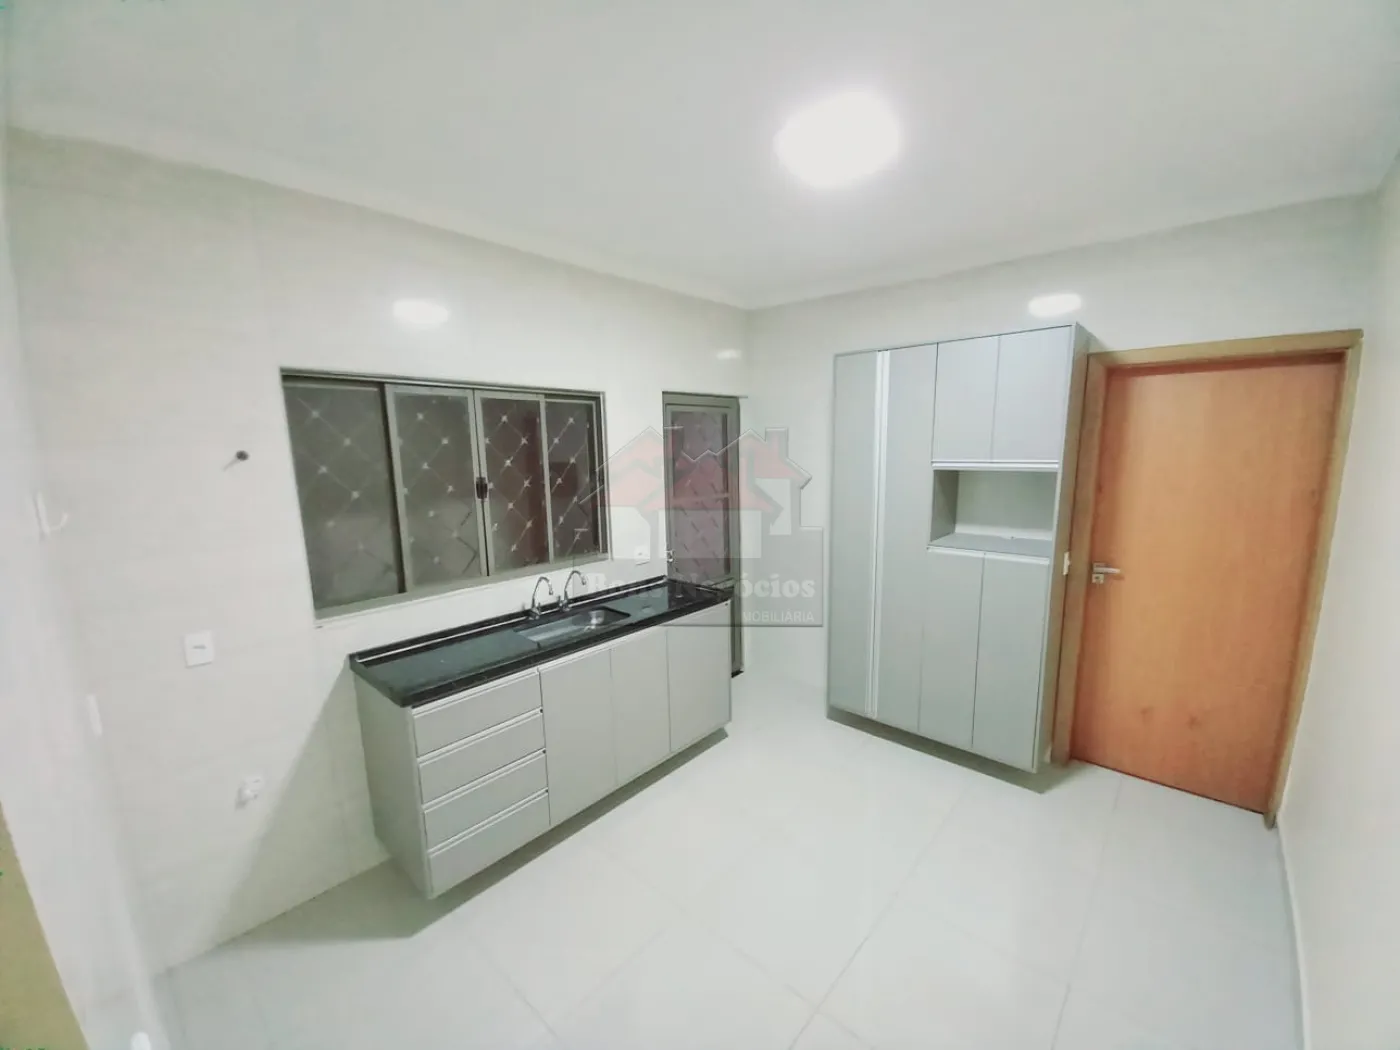 Comprar Casa / Padrão em Ribeirão Preto R$ 390.000,00 - Foto 9